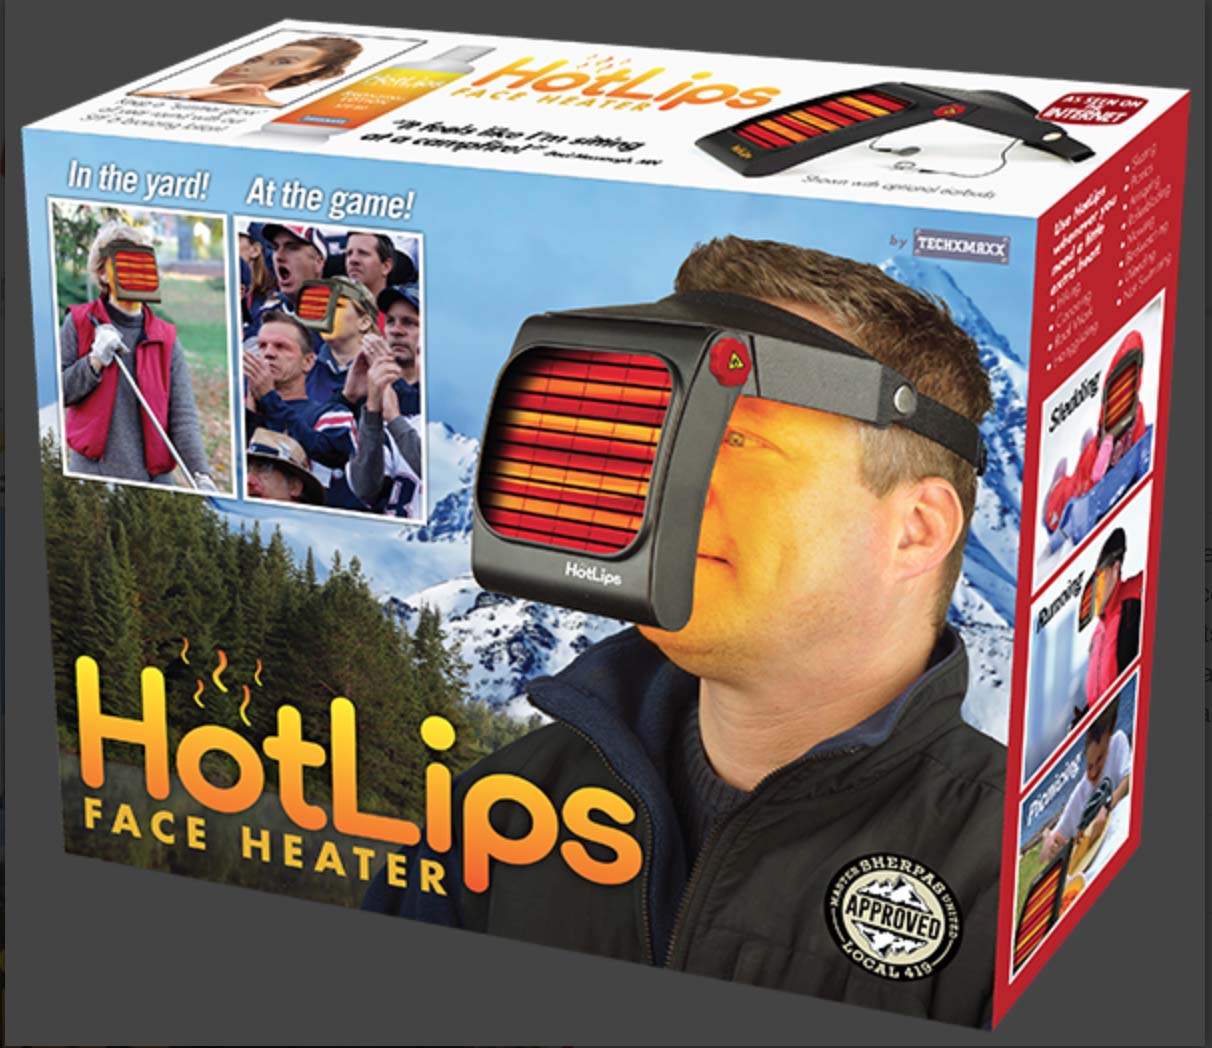 HotLips face heater #1